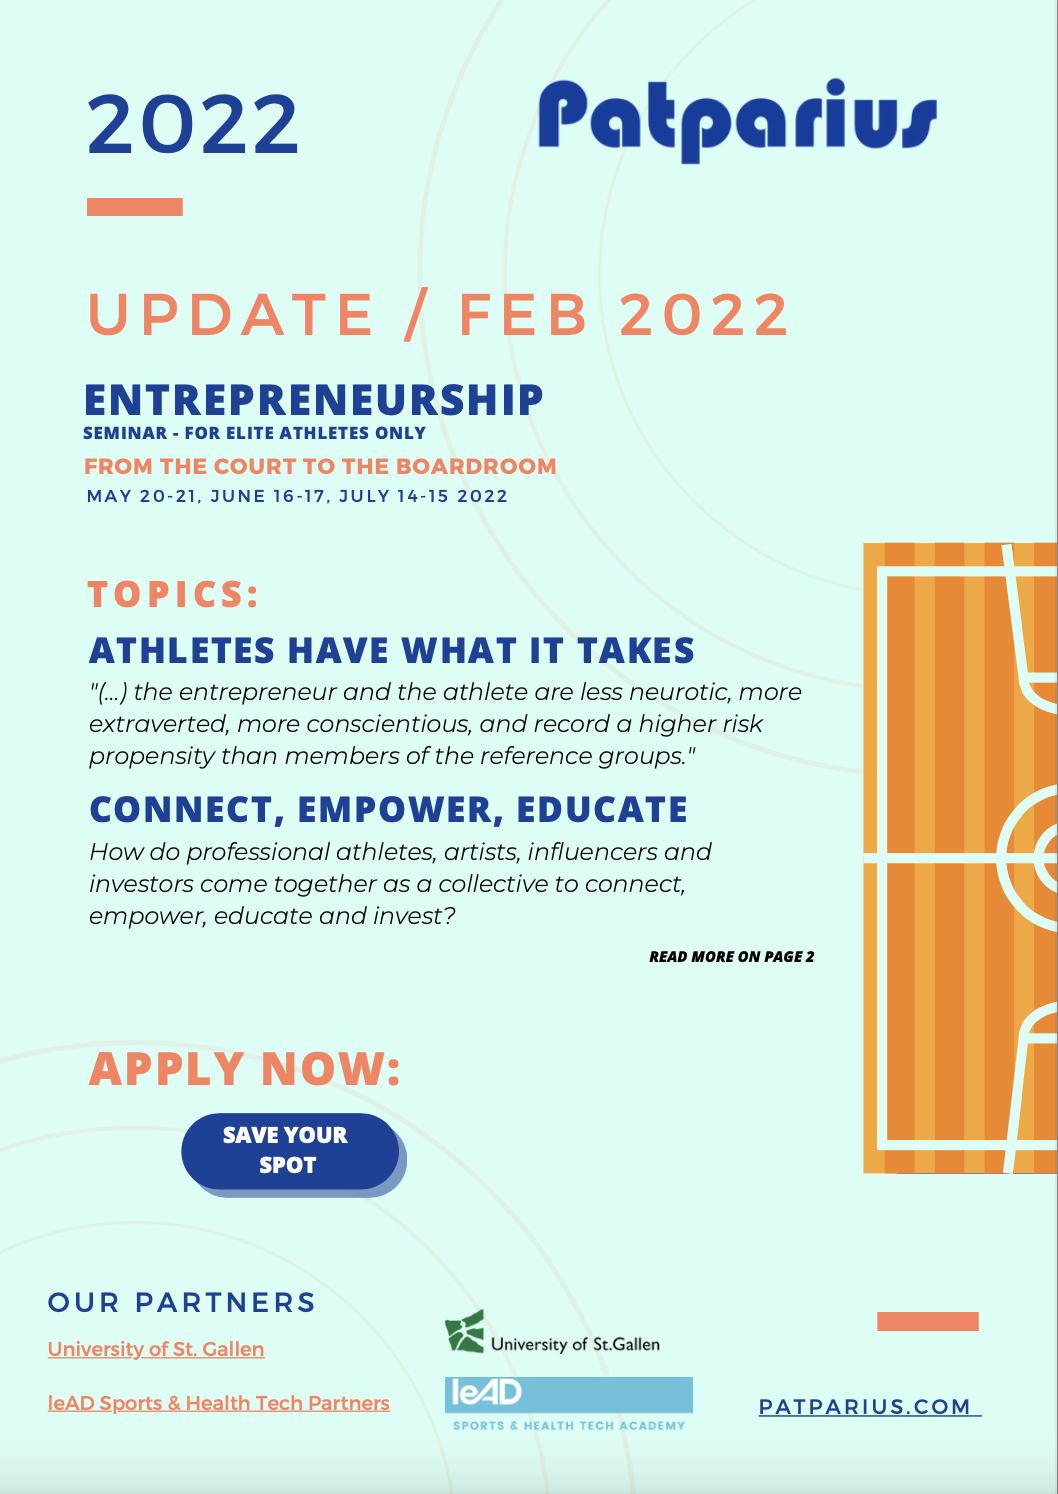 Image Update Entrepreneurship February 2022